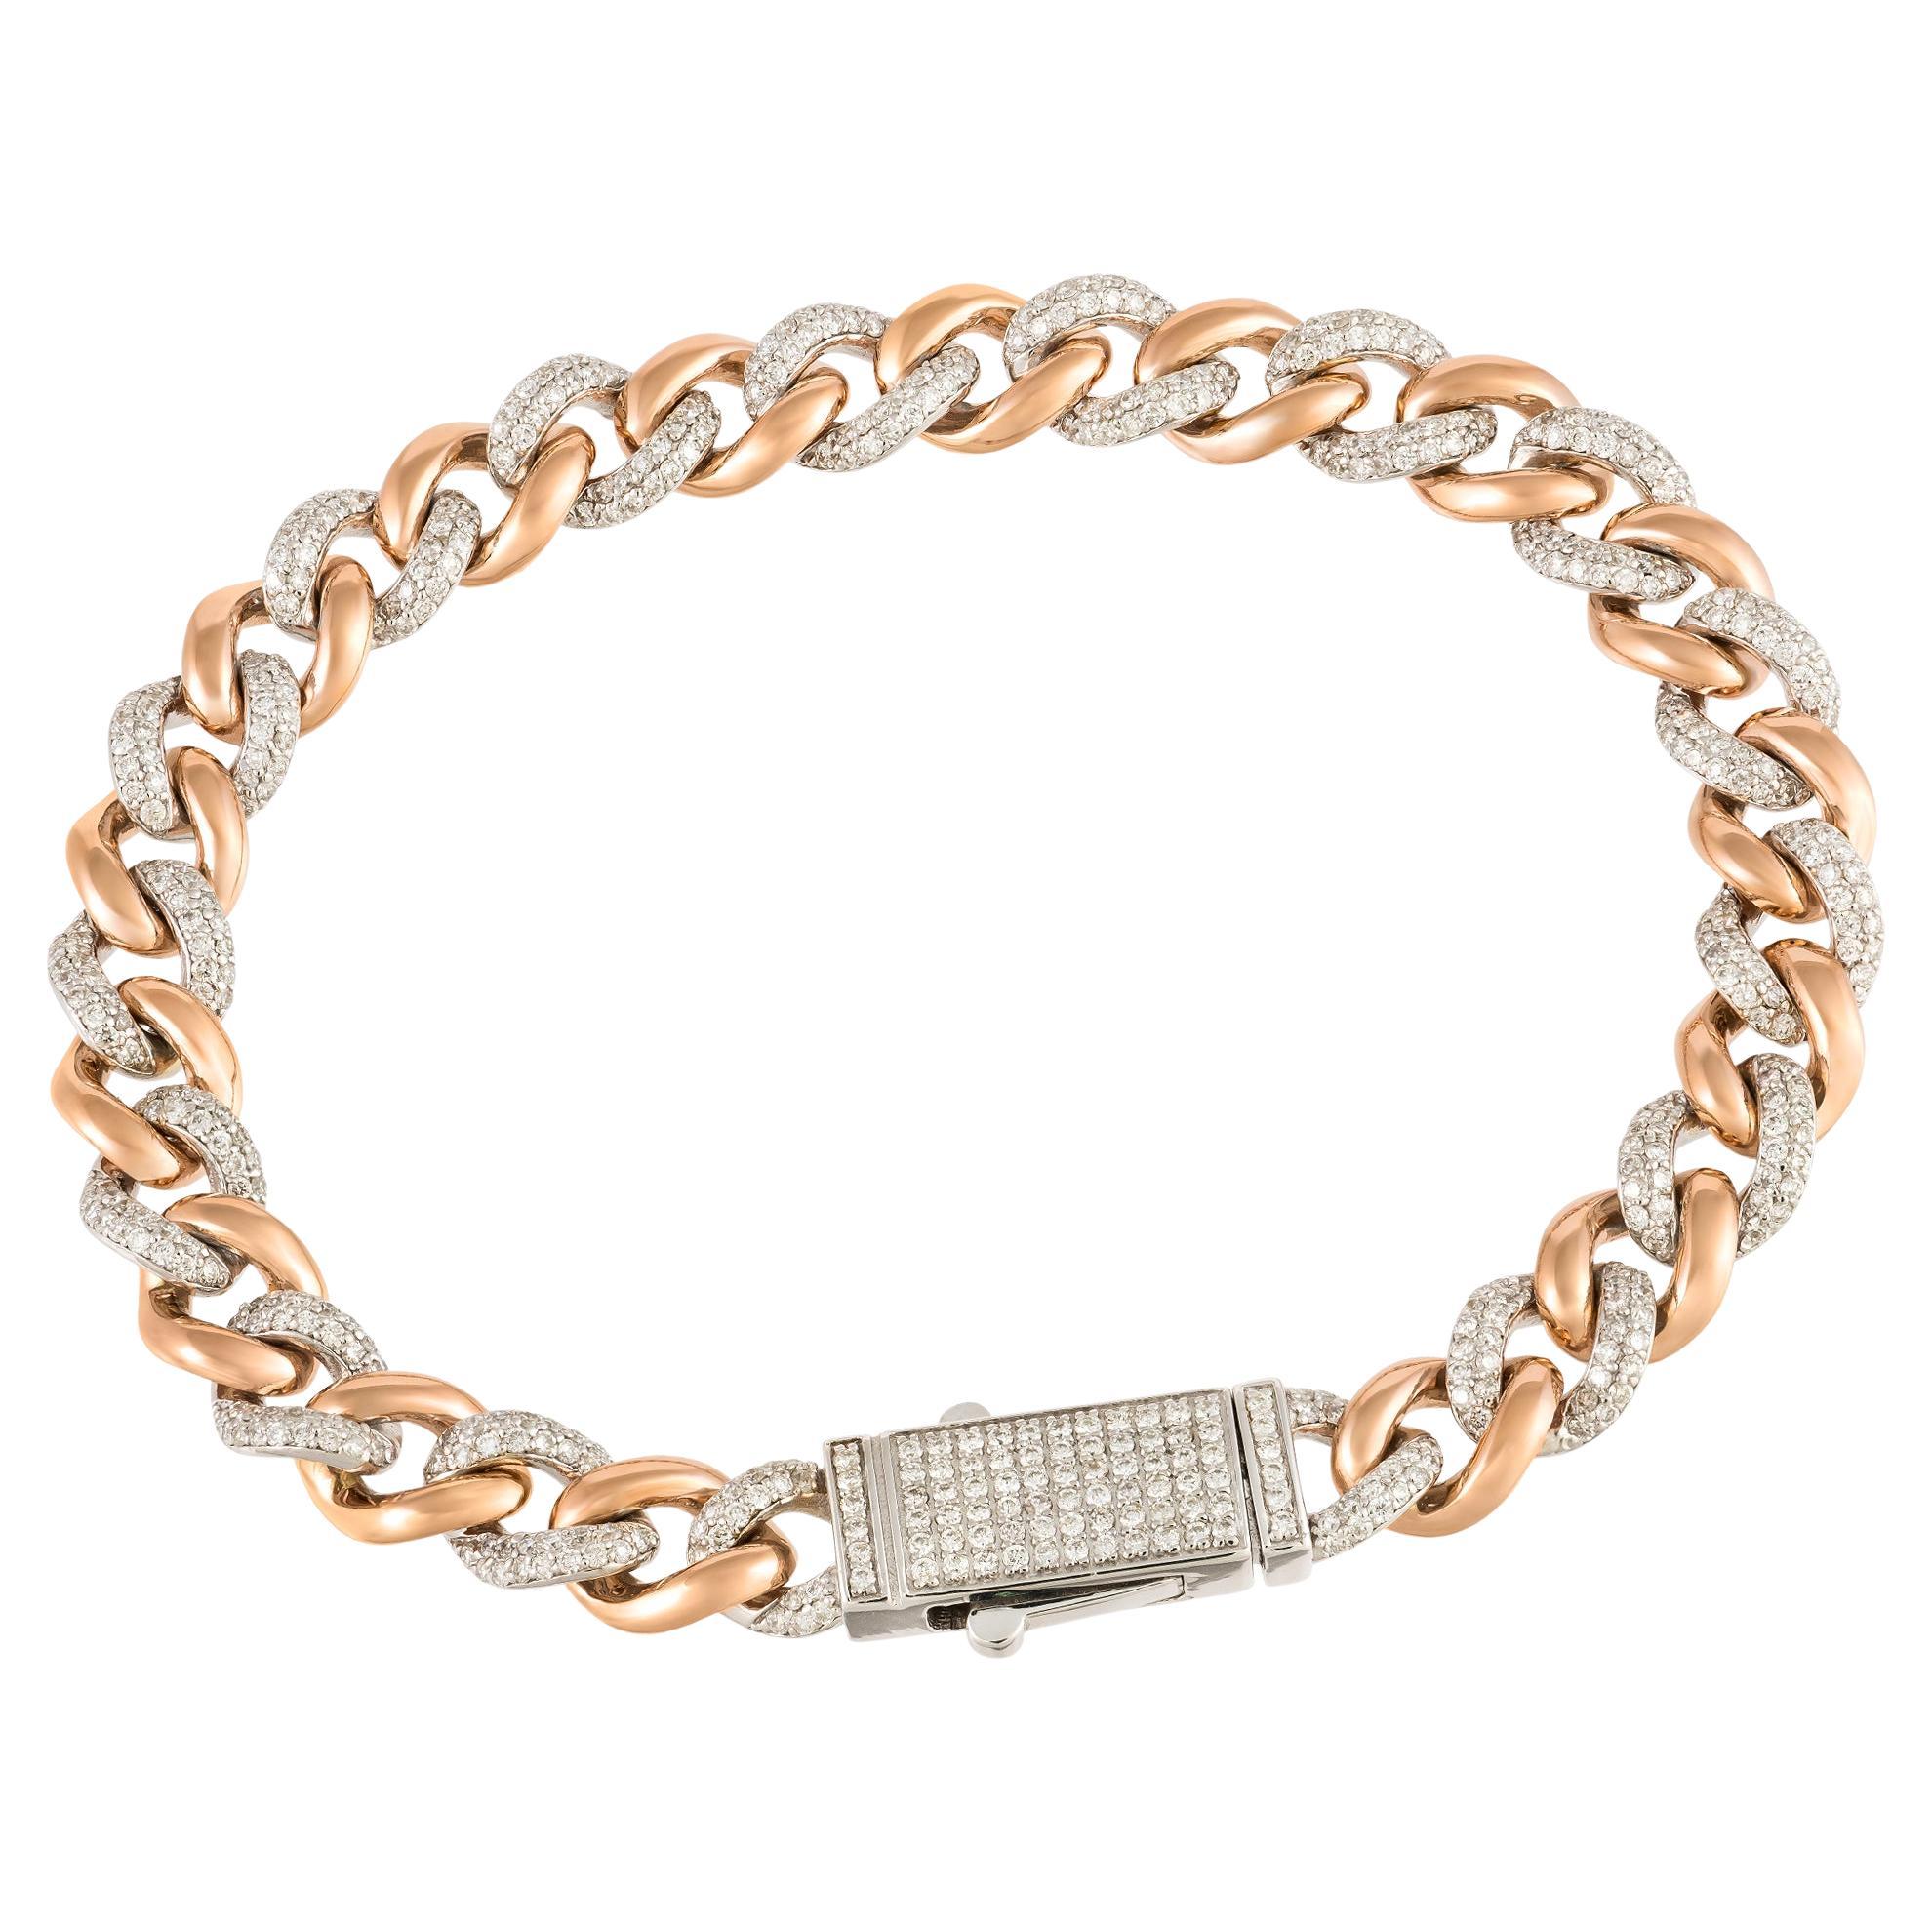 Chain Modern White Pink Gold 18K Bracelet Diamond For Her